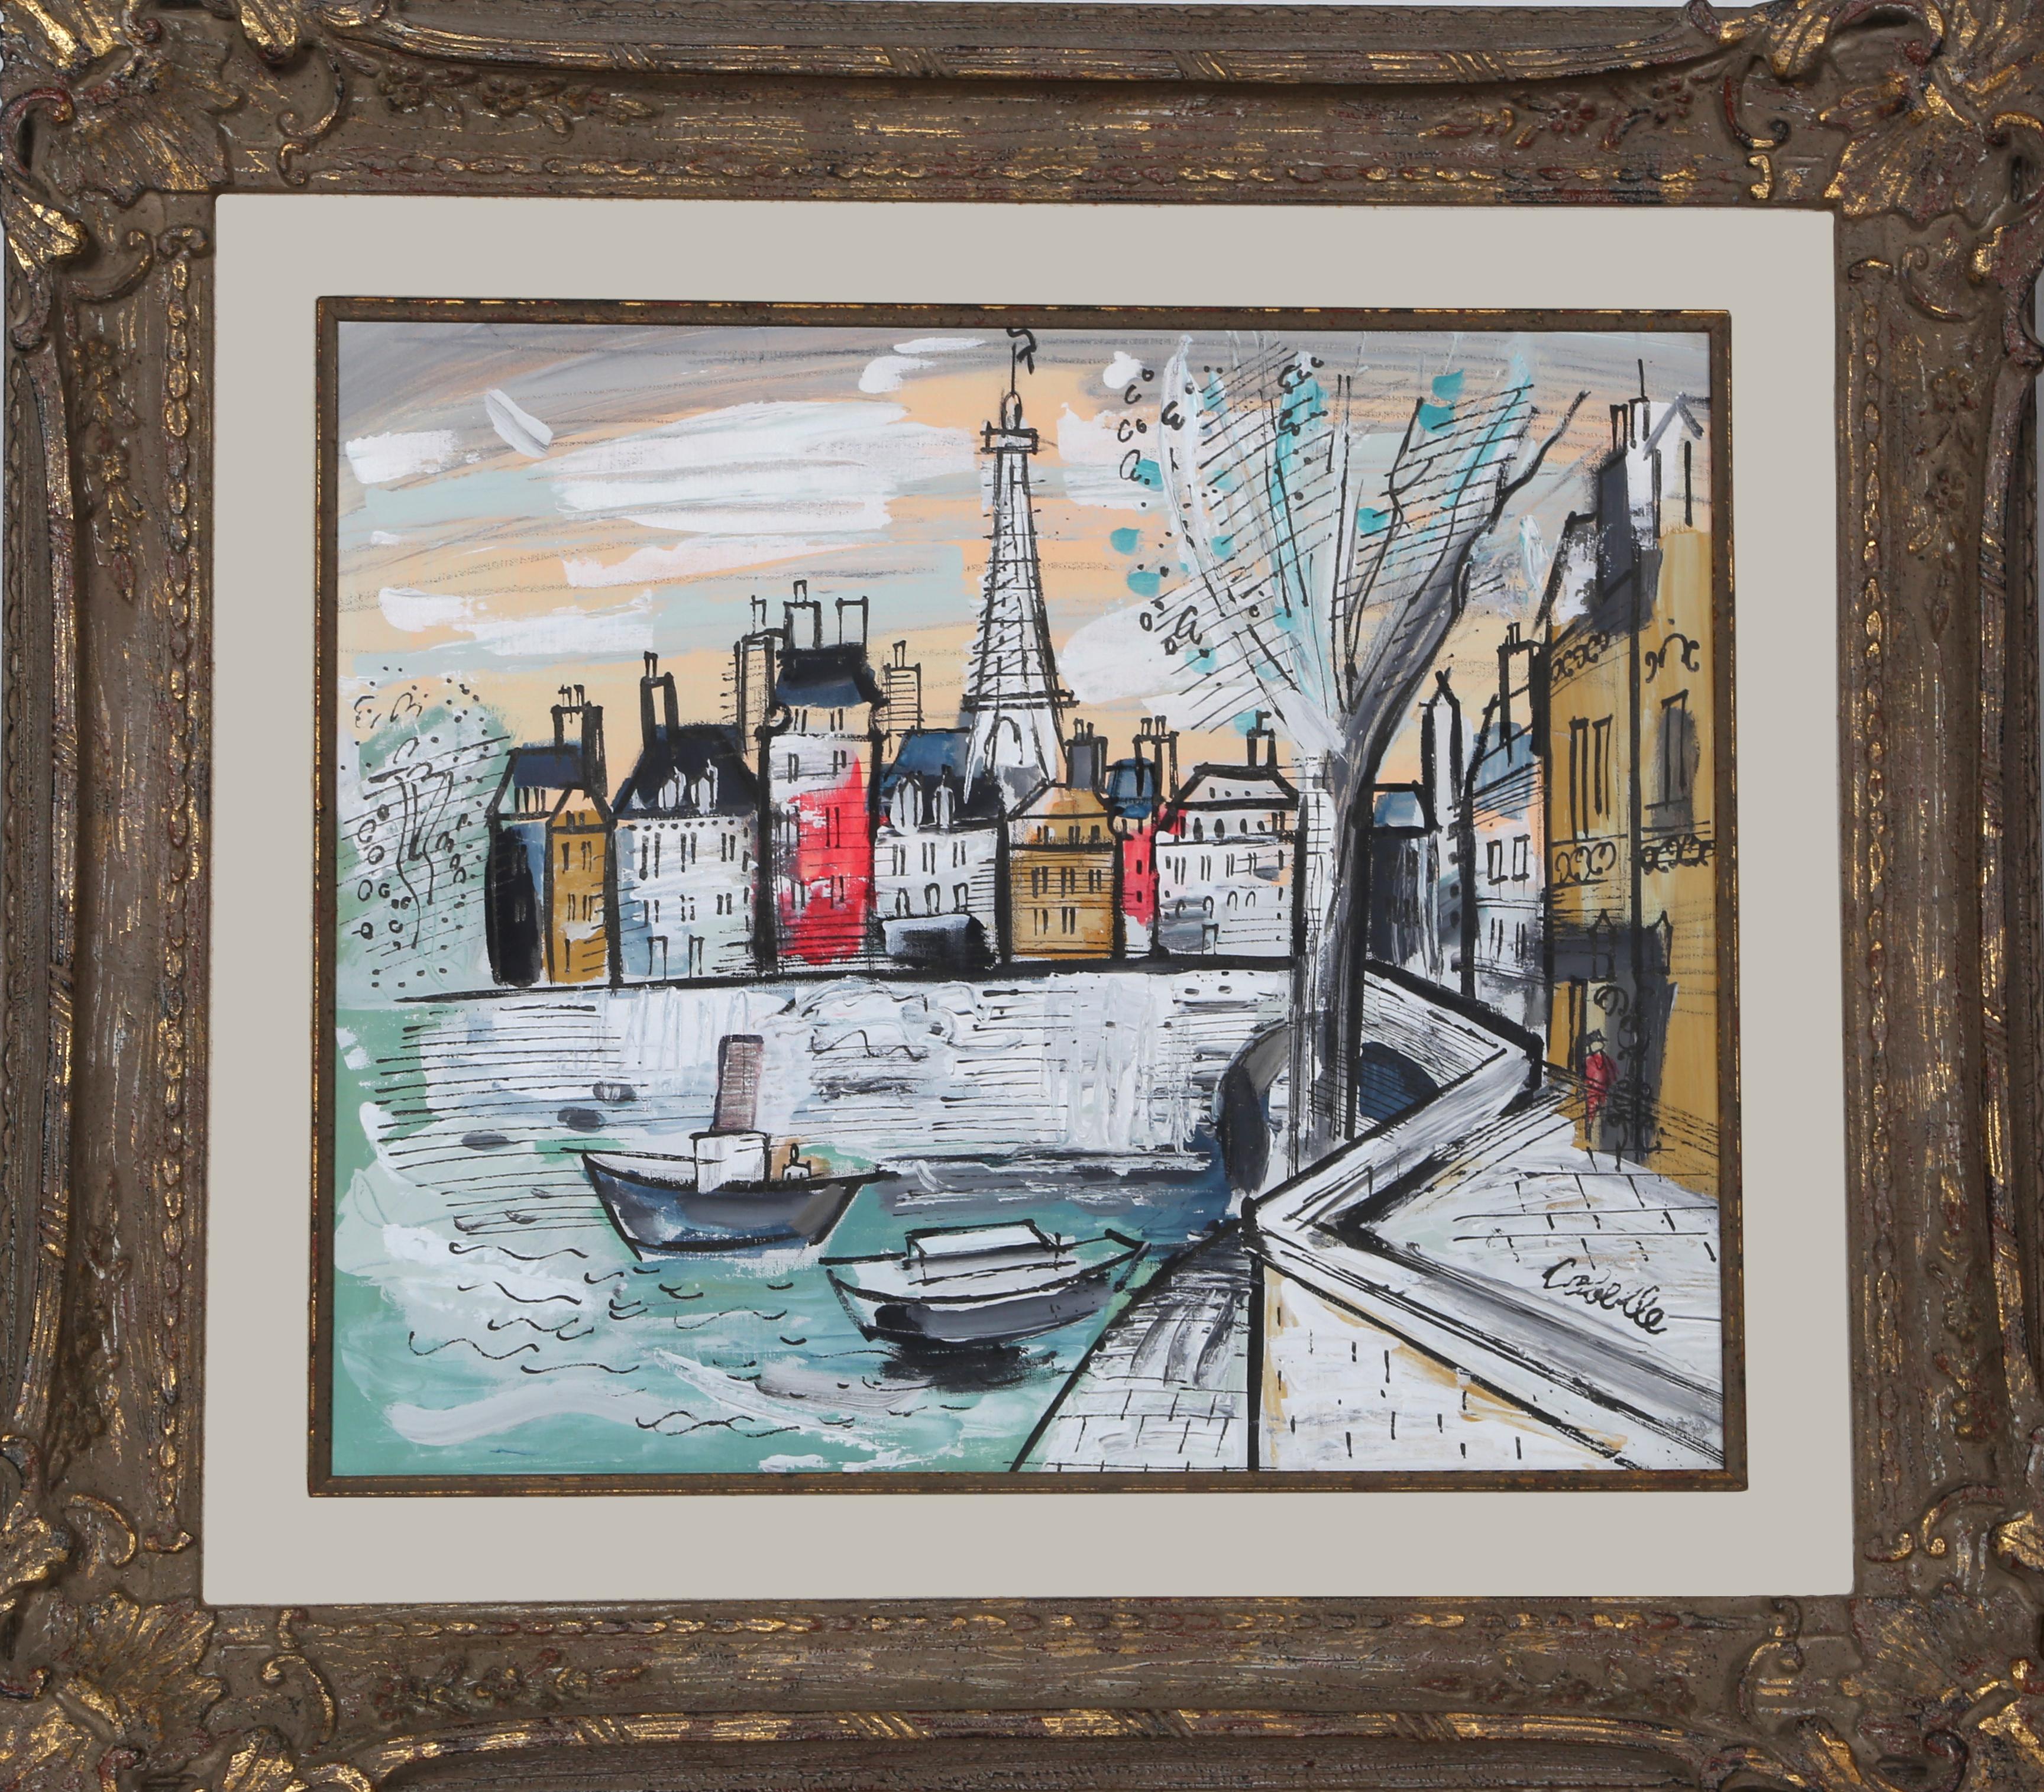 Artiste :  Charles Cobelle, Français (1902 - 1994)
Titre :  Tour Eiffel
Année :  vers 1966
Moyen :  Acrylique sur toile montée sur bois, signée
Taille :  20 x 24 in. (50,8 x 60,96 cm)
Taille du cadre :  31 x 35 pouces

